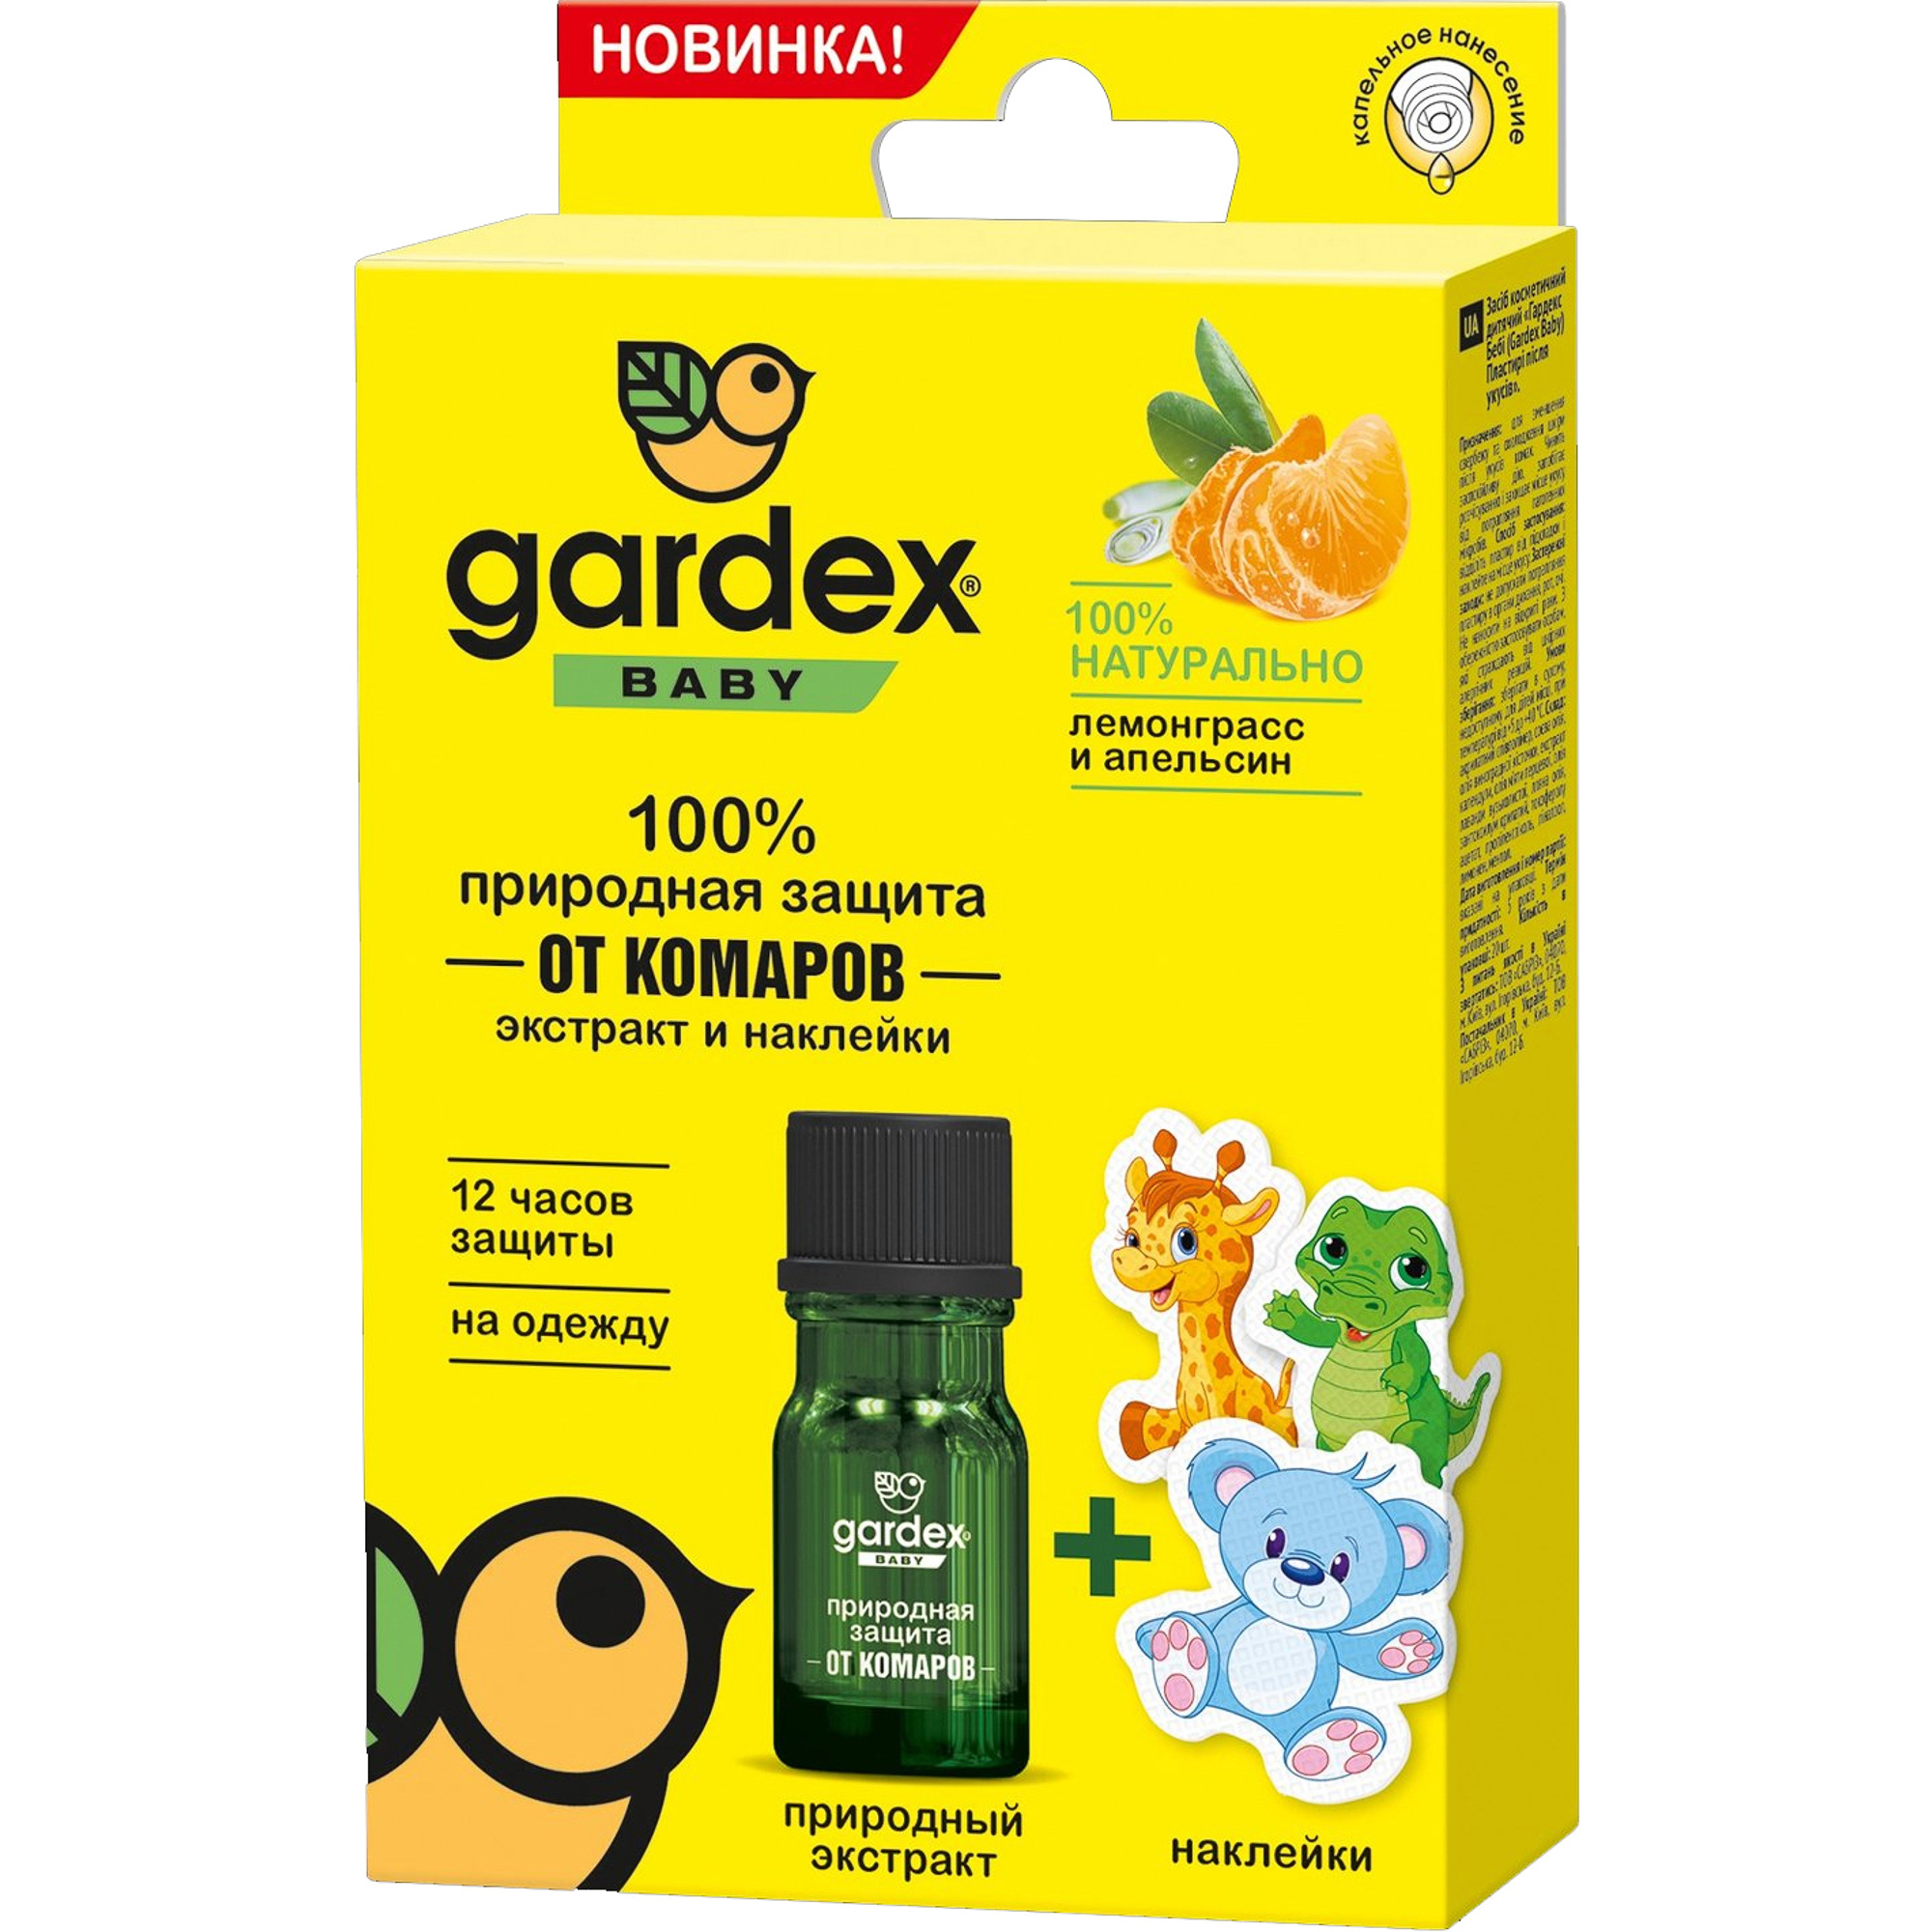 фото Экстракт и наклейки gardex baby природная защита от комаров 9 шт